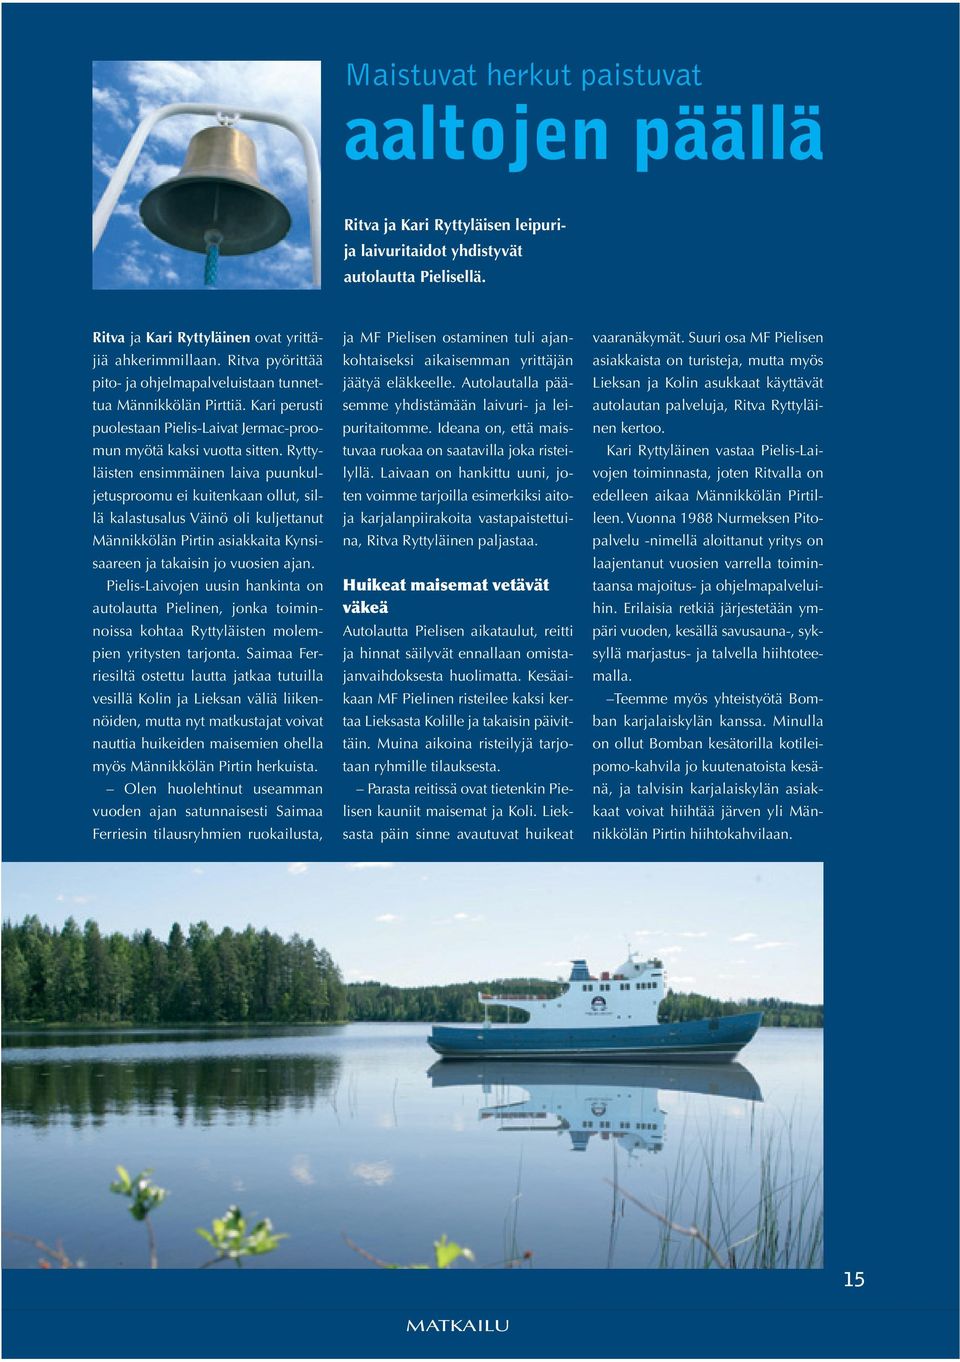 Ryttyläisten ensimmäinen laiva puunkuljetusproomu ei kuitenkaan ollut, sillä kalastusalus Väinö oli kuljettanut Männikkölän Pirtin asiakkaita Kynsisaareen ja takaisin jo vuosien ajan.